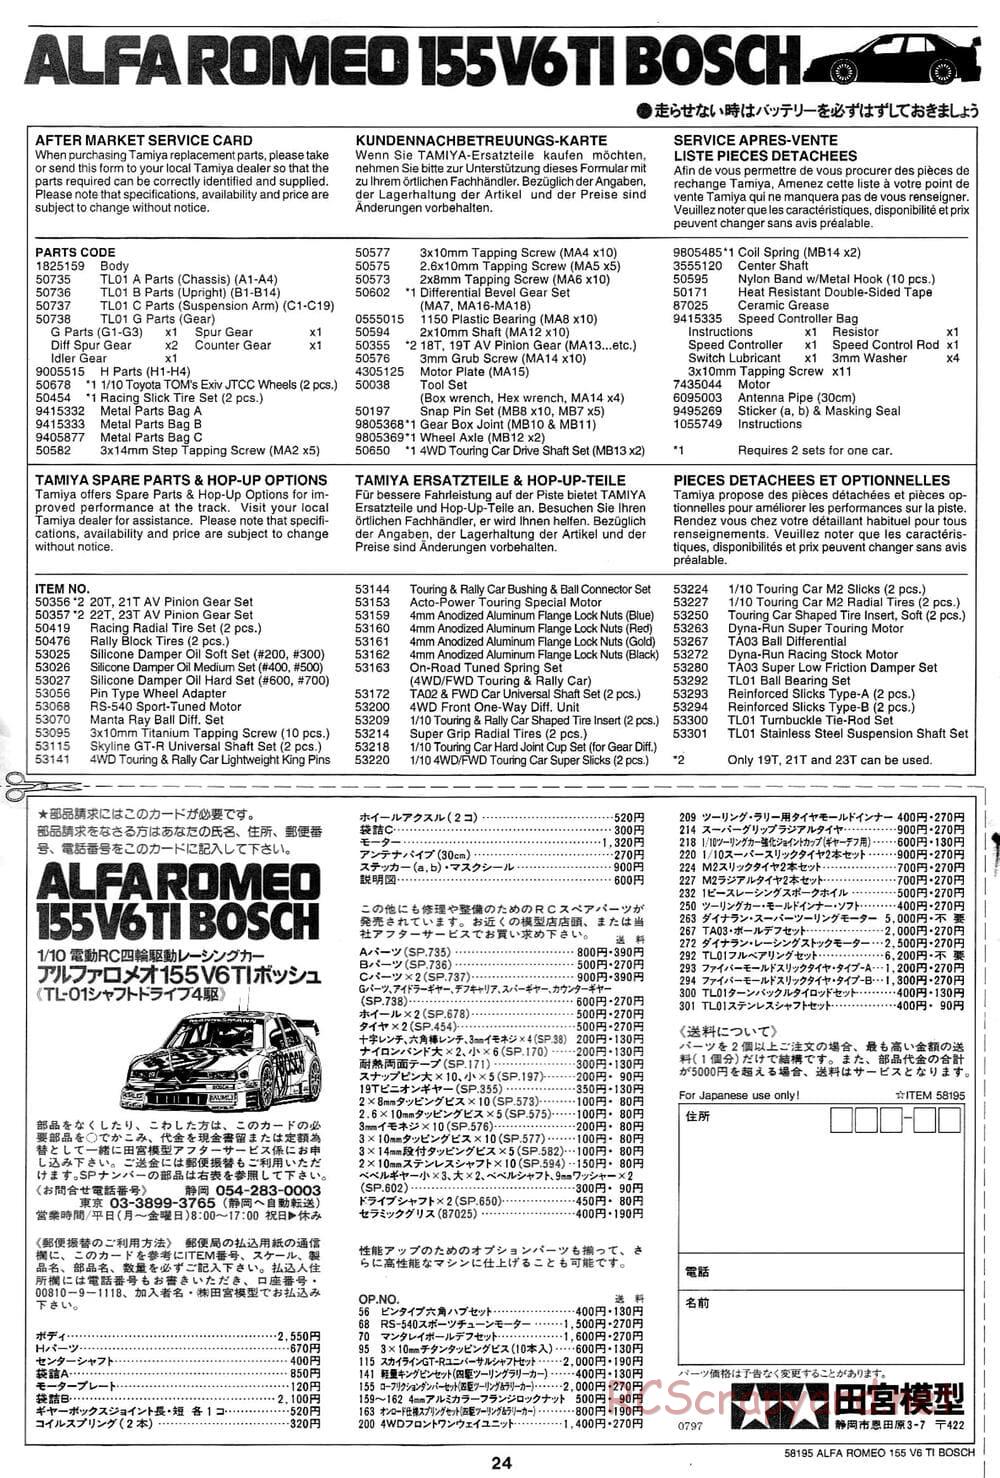 Tamiya - Alfa Romeo 155 V6 TI BOSCH - TL-01 Chassis - Manual - Page 24